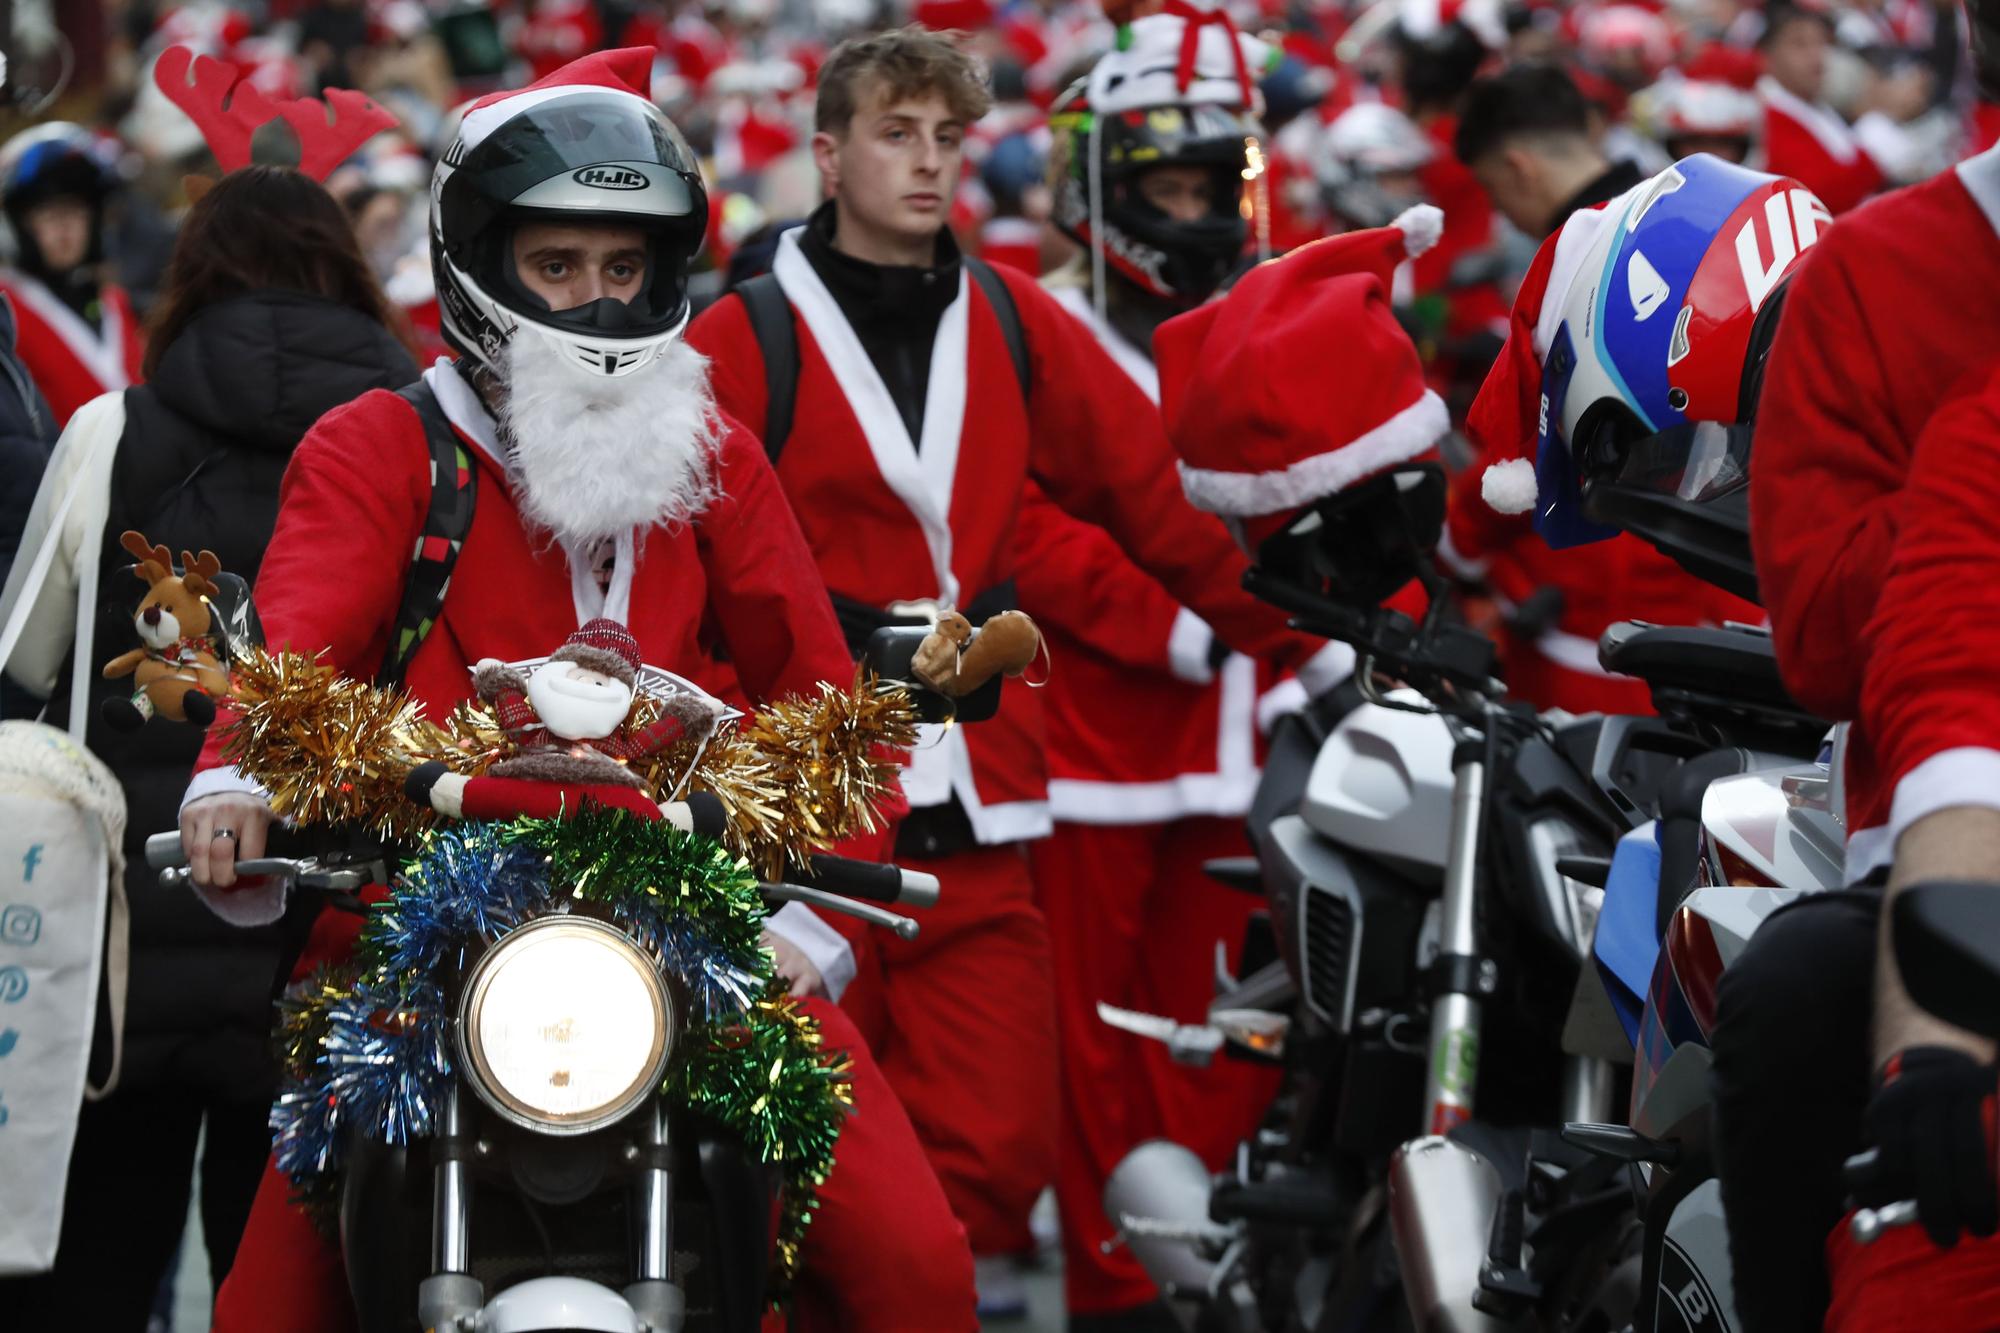 Papa Noel guarda los renos y saca la moto